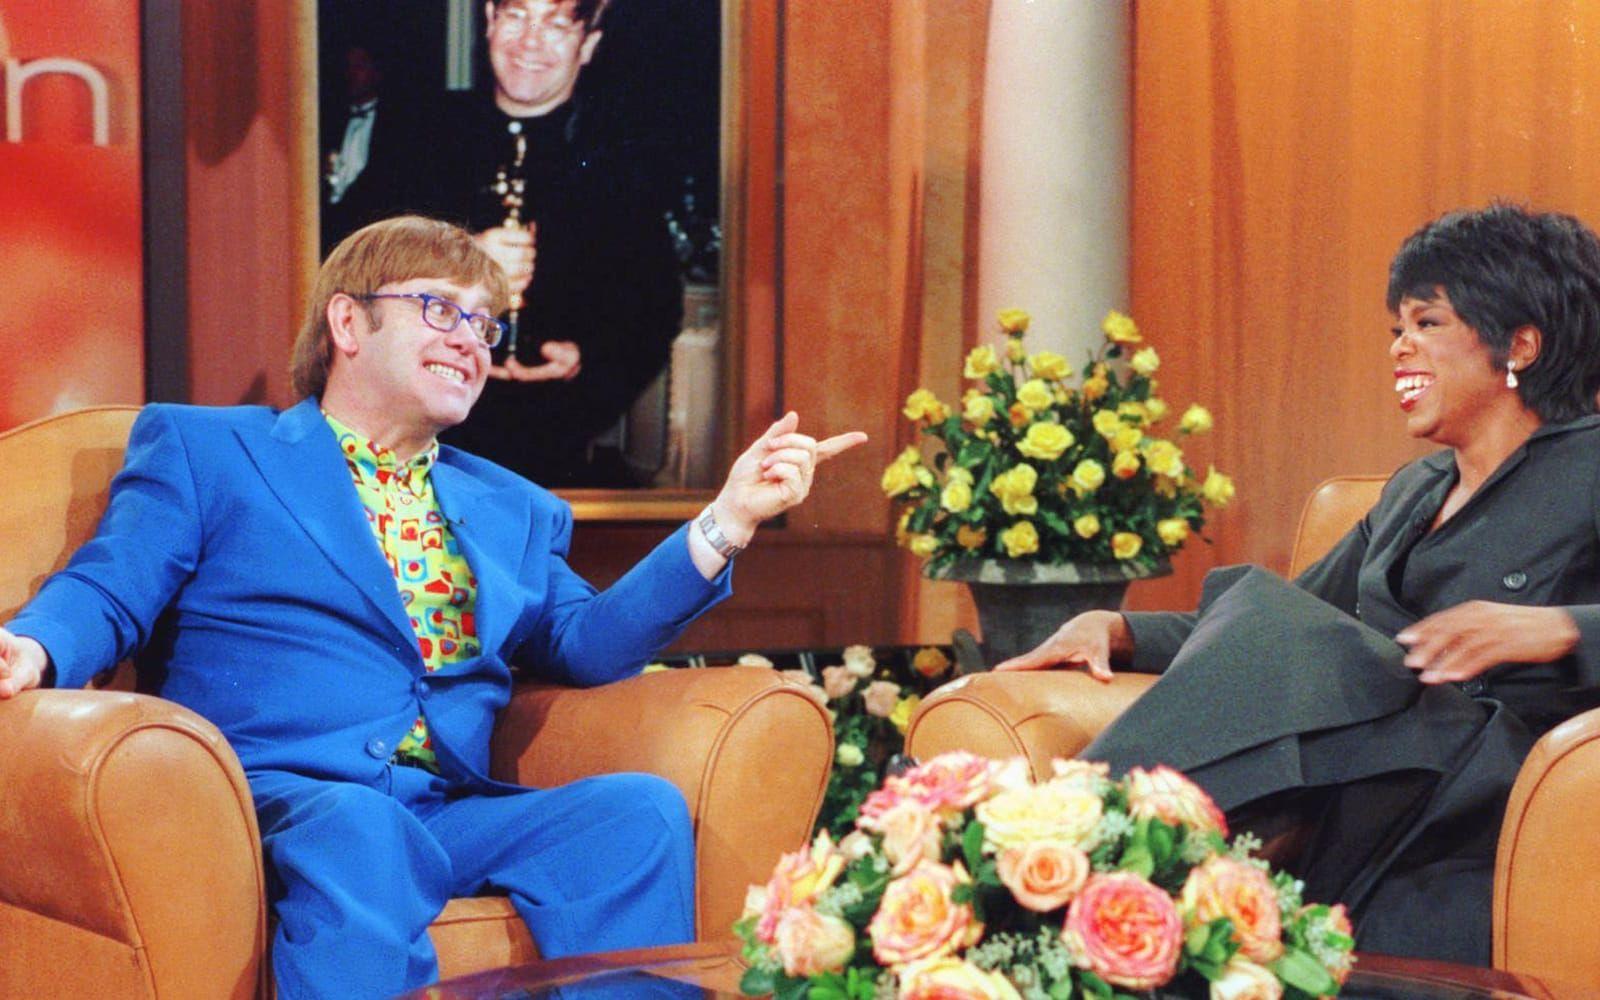 1997: Elton John gästar Oprah Winfreys talkshow. I bakgrunden skymtar vi Elton med Oscarn som han vann för ”Can you feel the love tonight” och ”Lejonkungen” 1994. Foto: TT